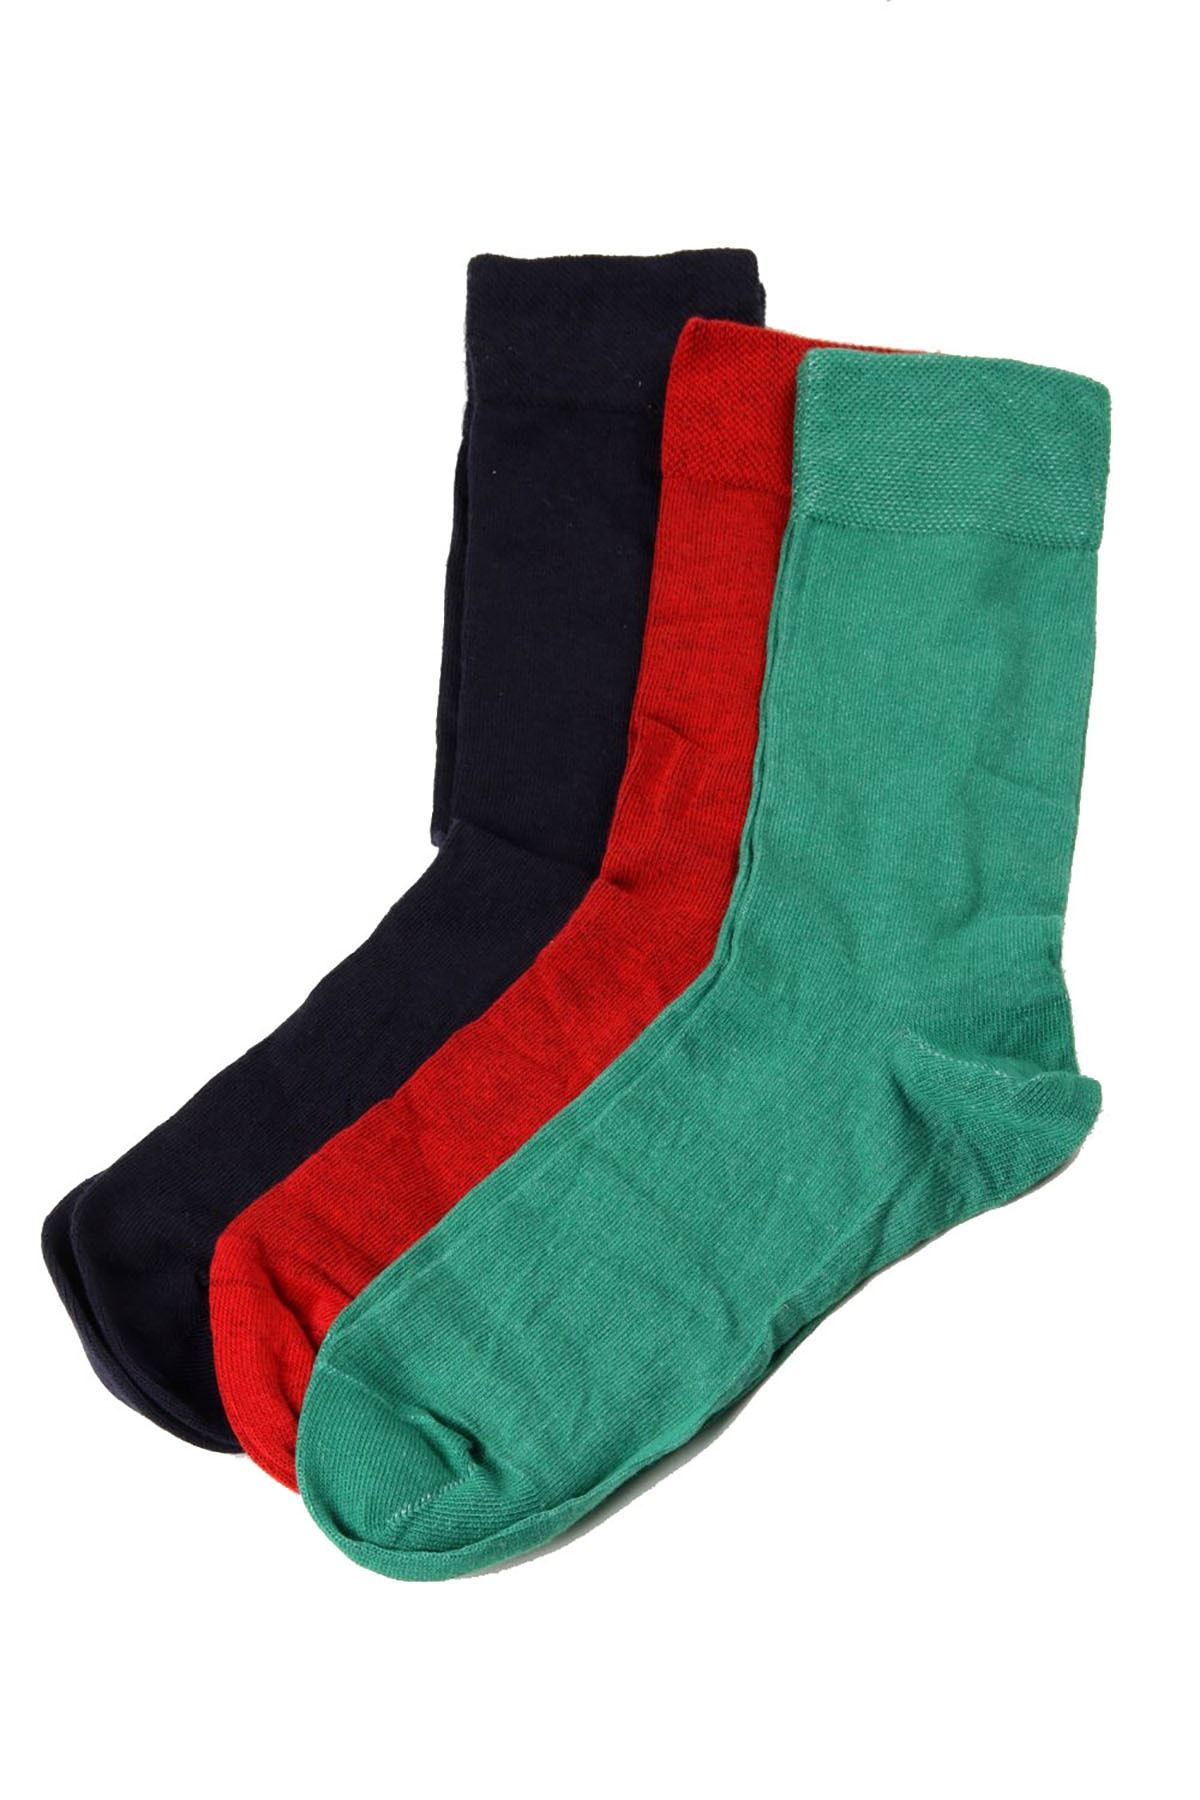 Darkzone Erkek Çok Renkli 3'lü Soket Çorap